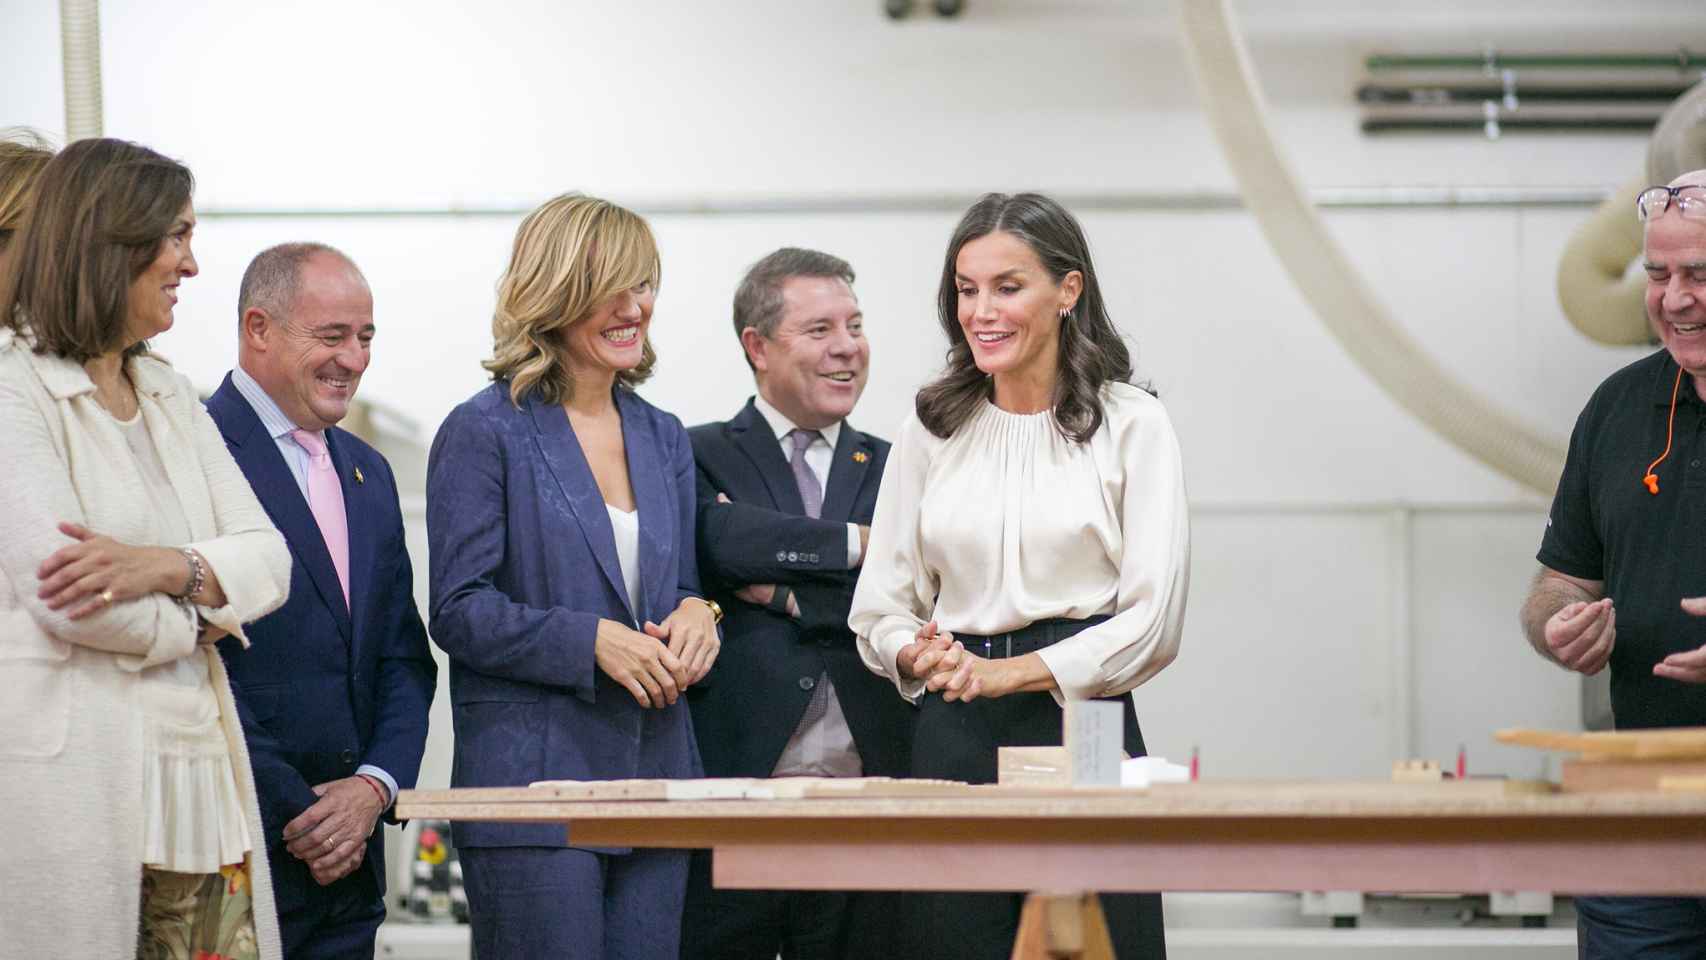 La reina Letizia inaugura el nuevo curso de FP en Albacete: todas las imágenes